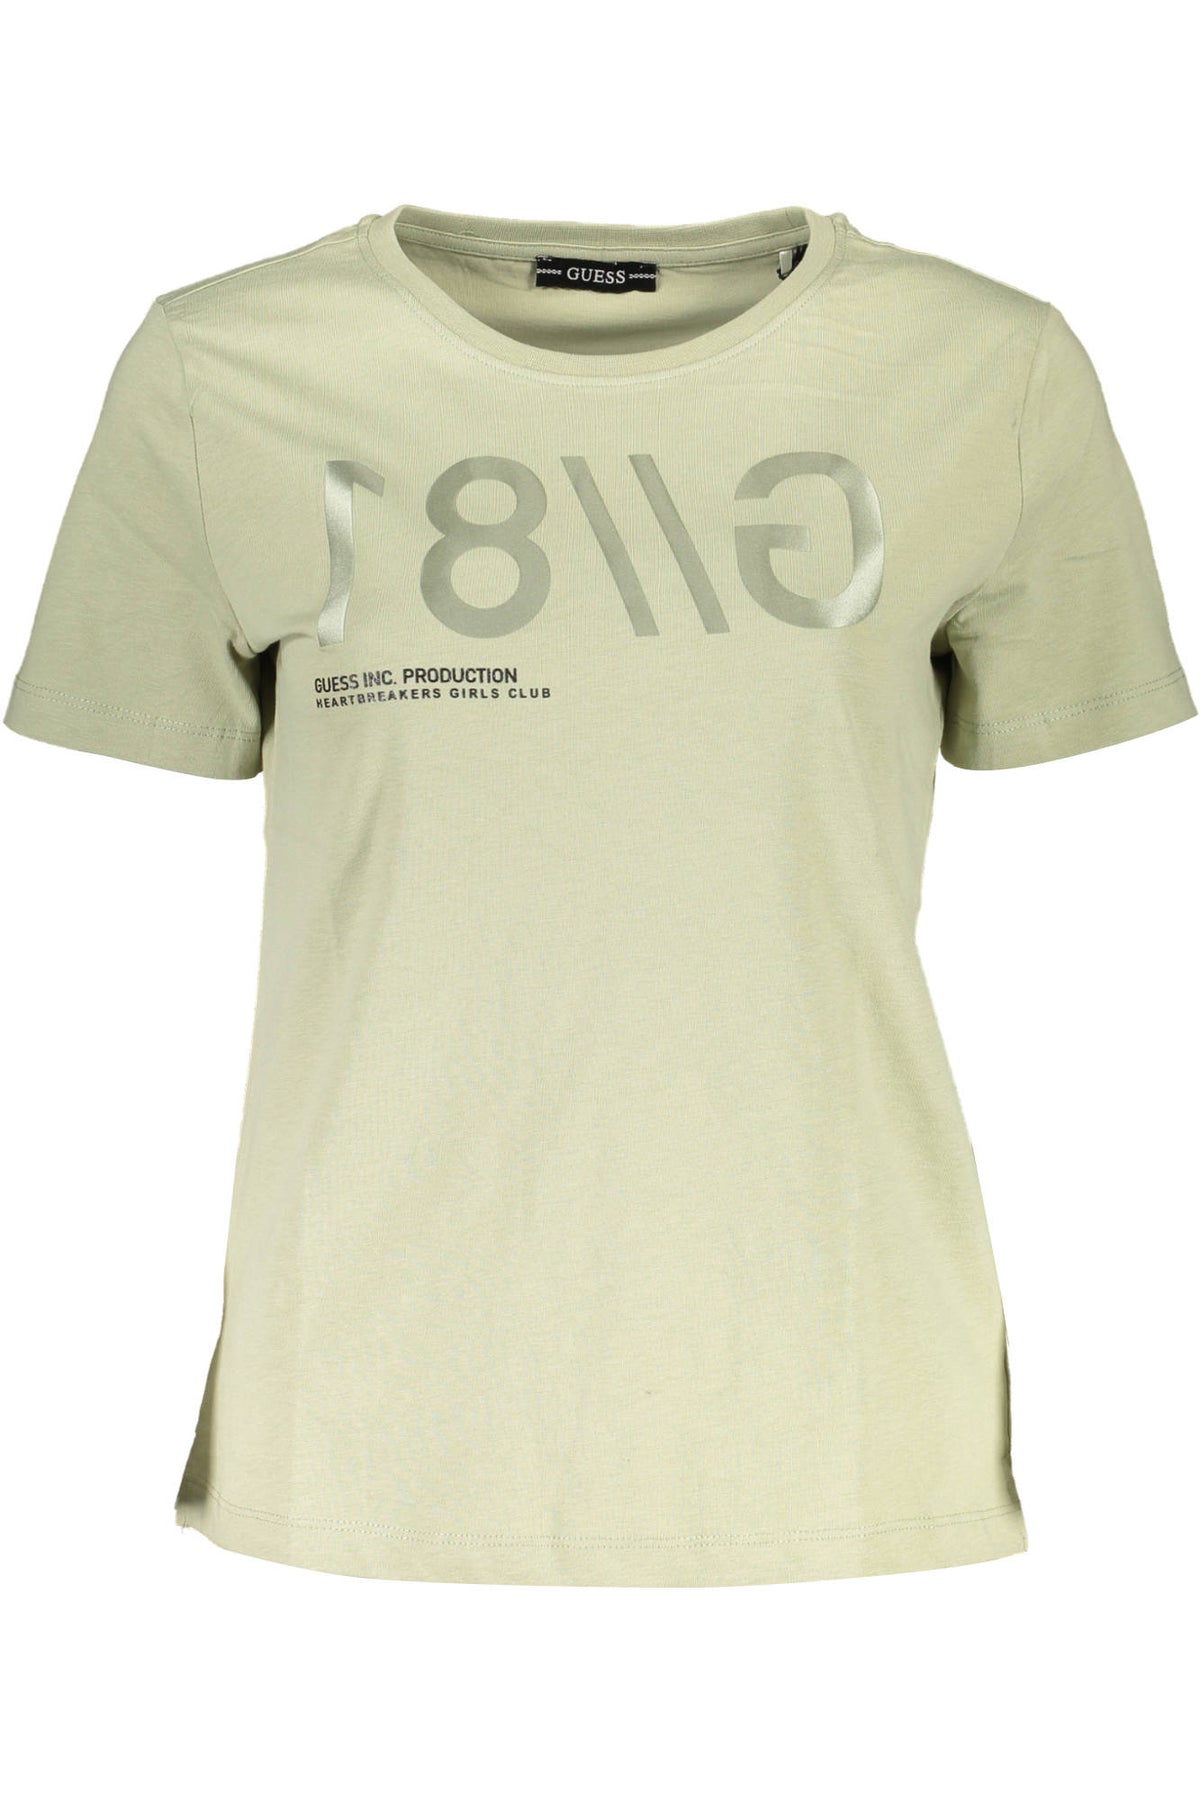 GUESS JEANS Damen T-Shirt Shirt Sweatshirt Oberteil mit Rundhalsausschnitt, kurzärmlig